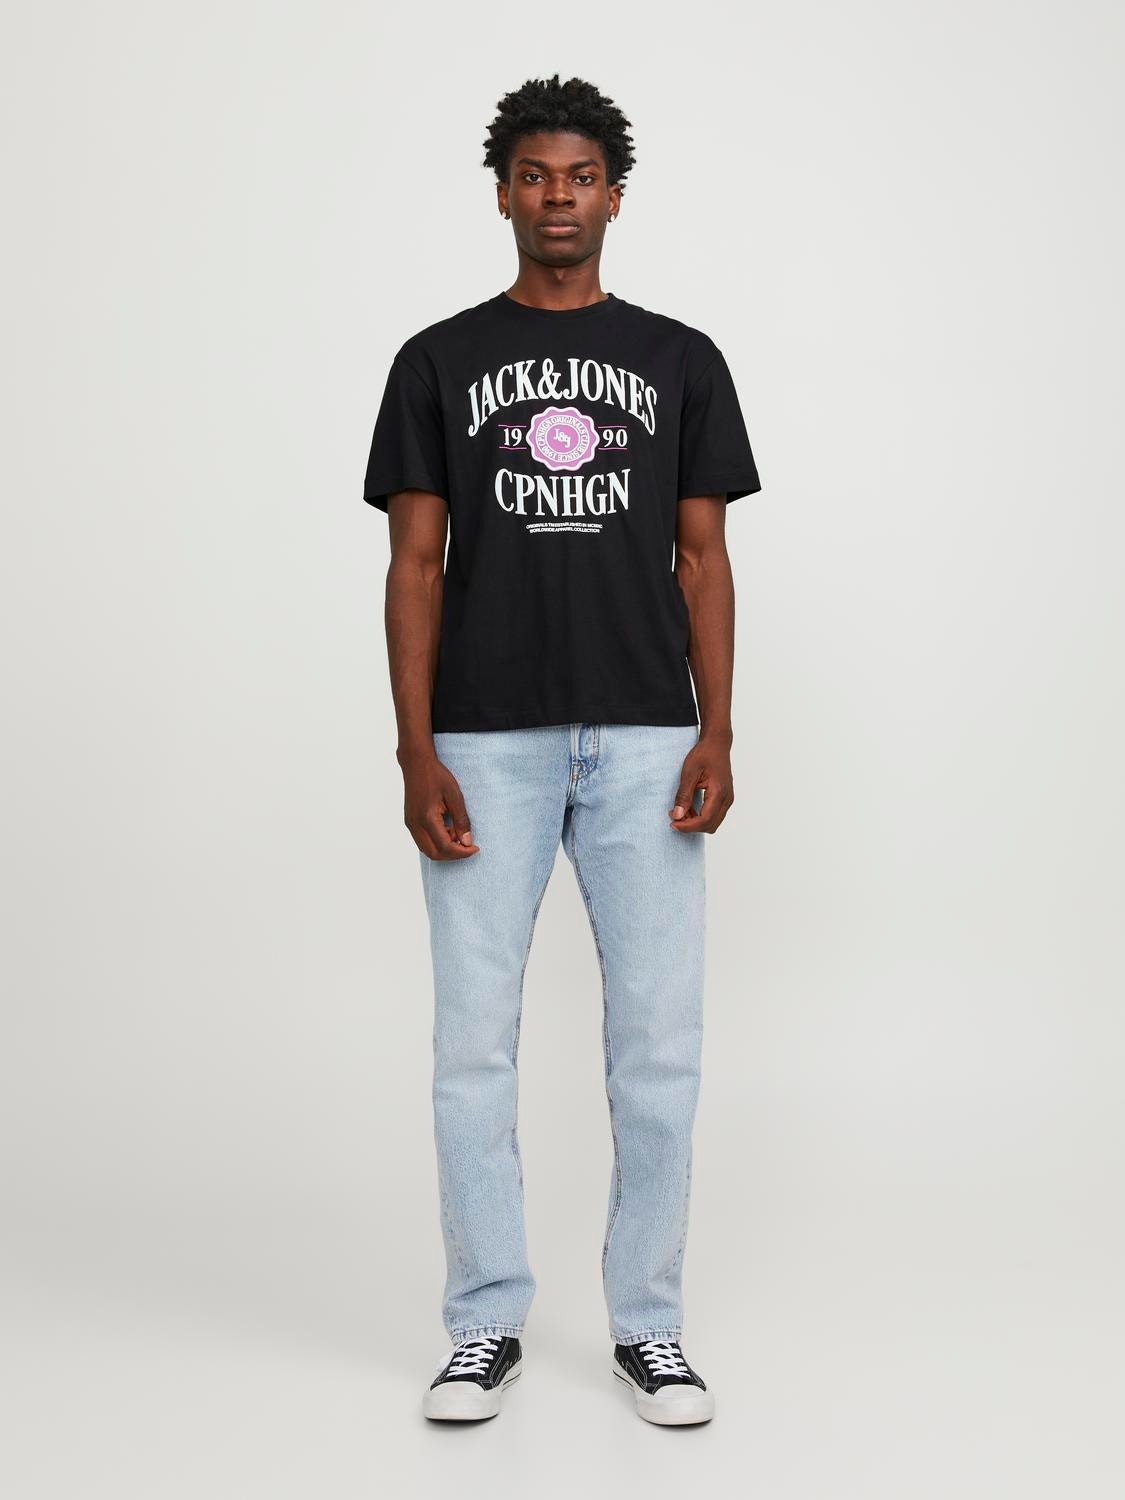 Jack & Jones Gedruckt Rundhals T-shirt -Black - 12251899